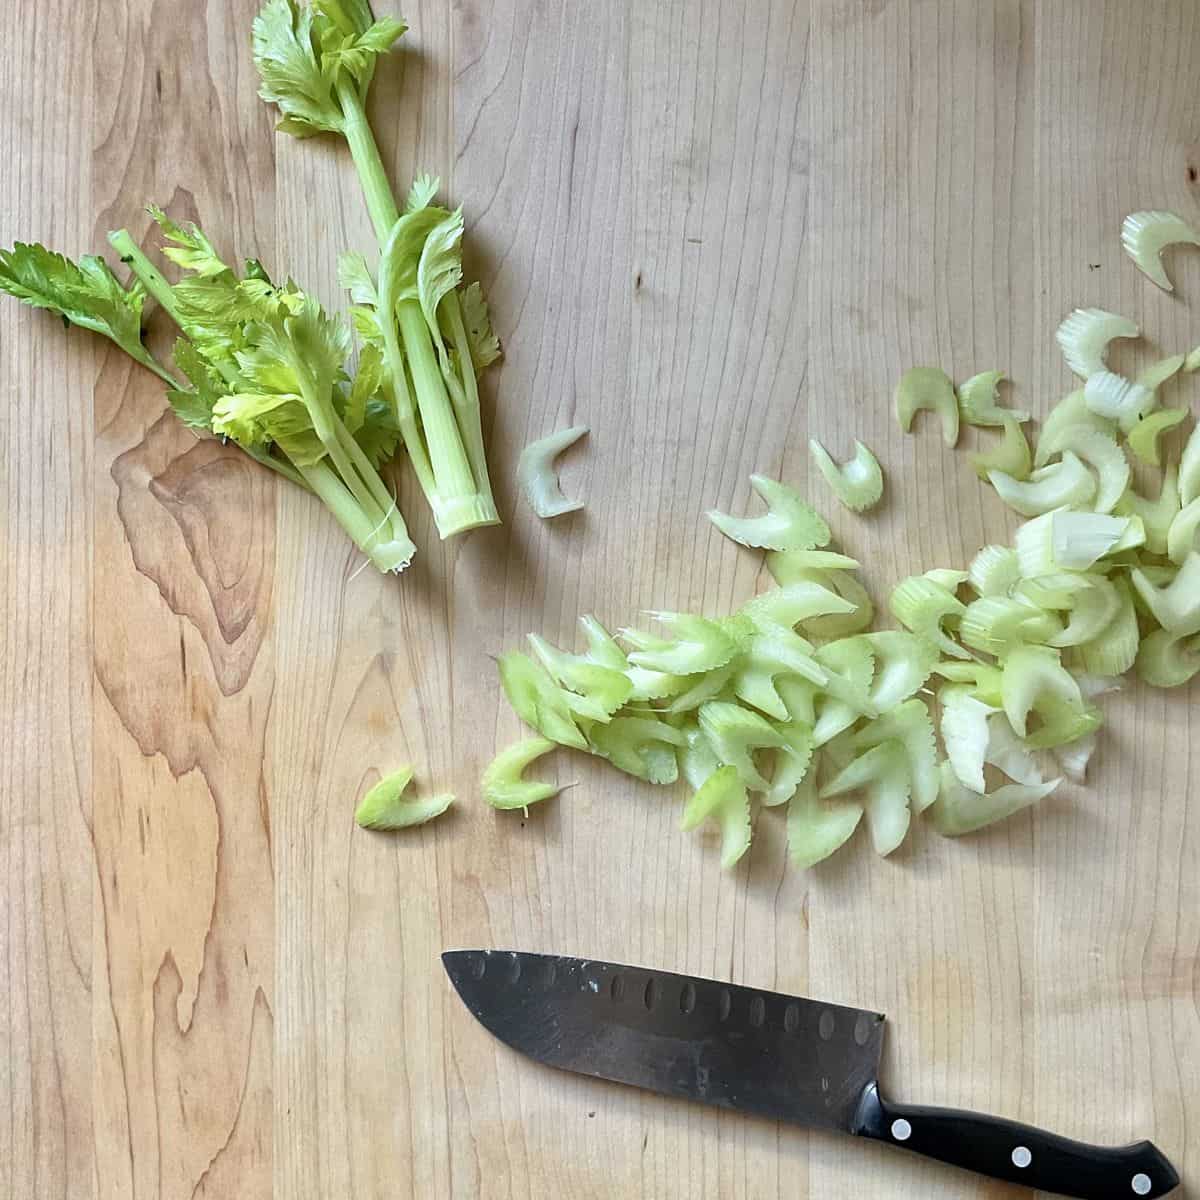 Sliced celery on a wooden board.